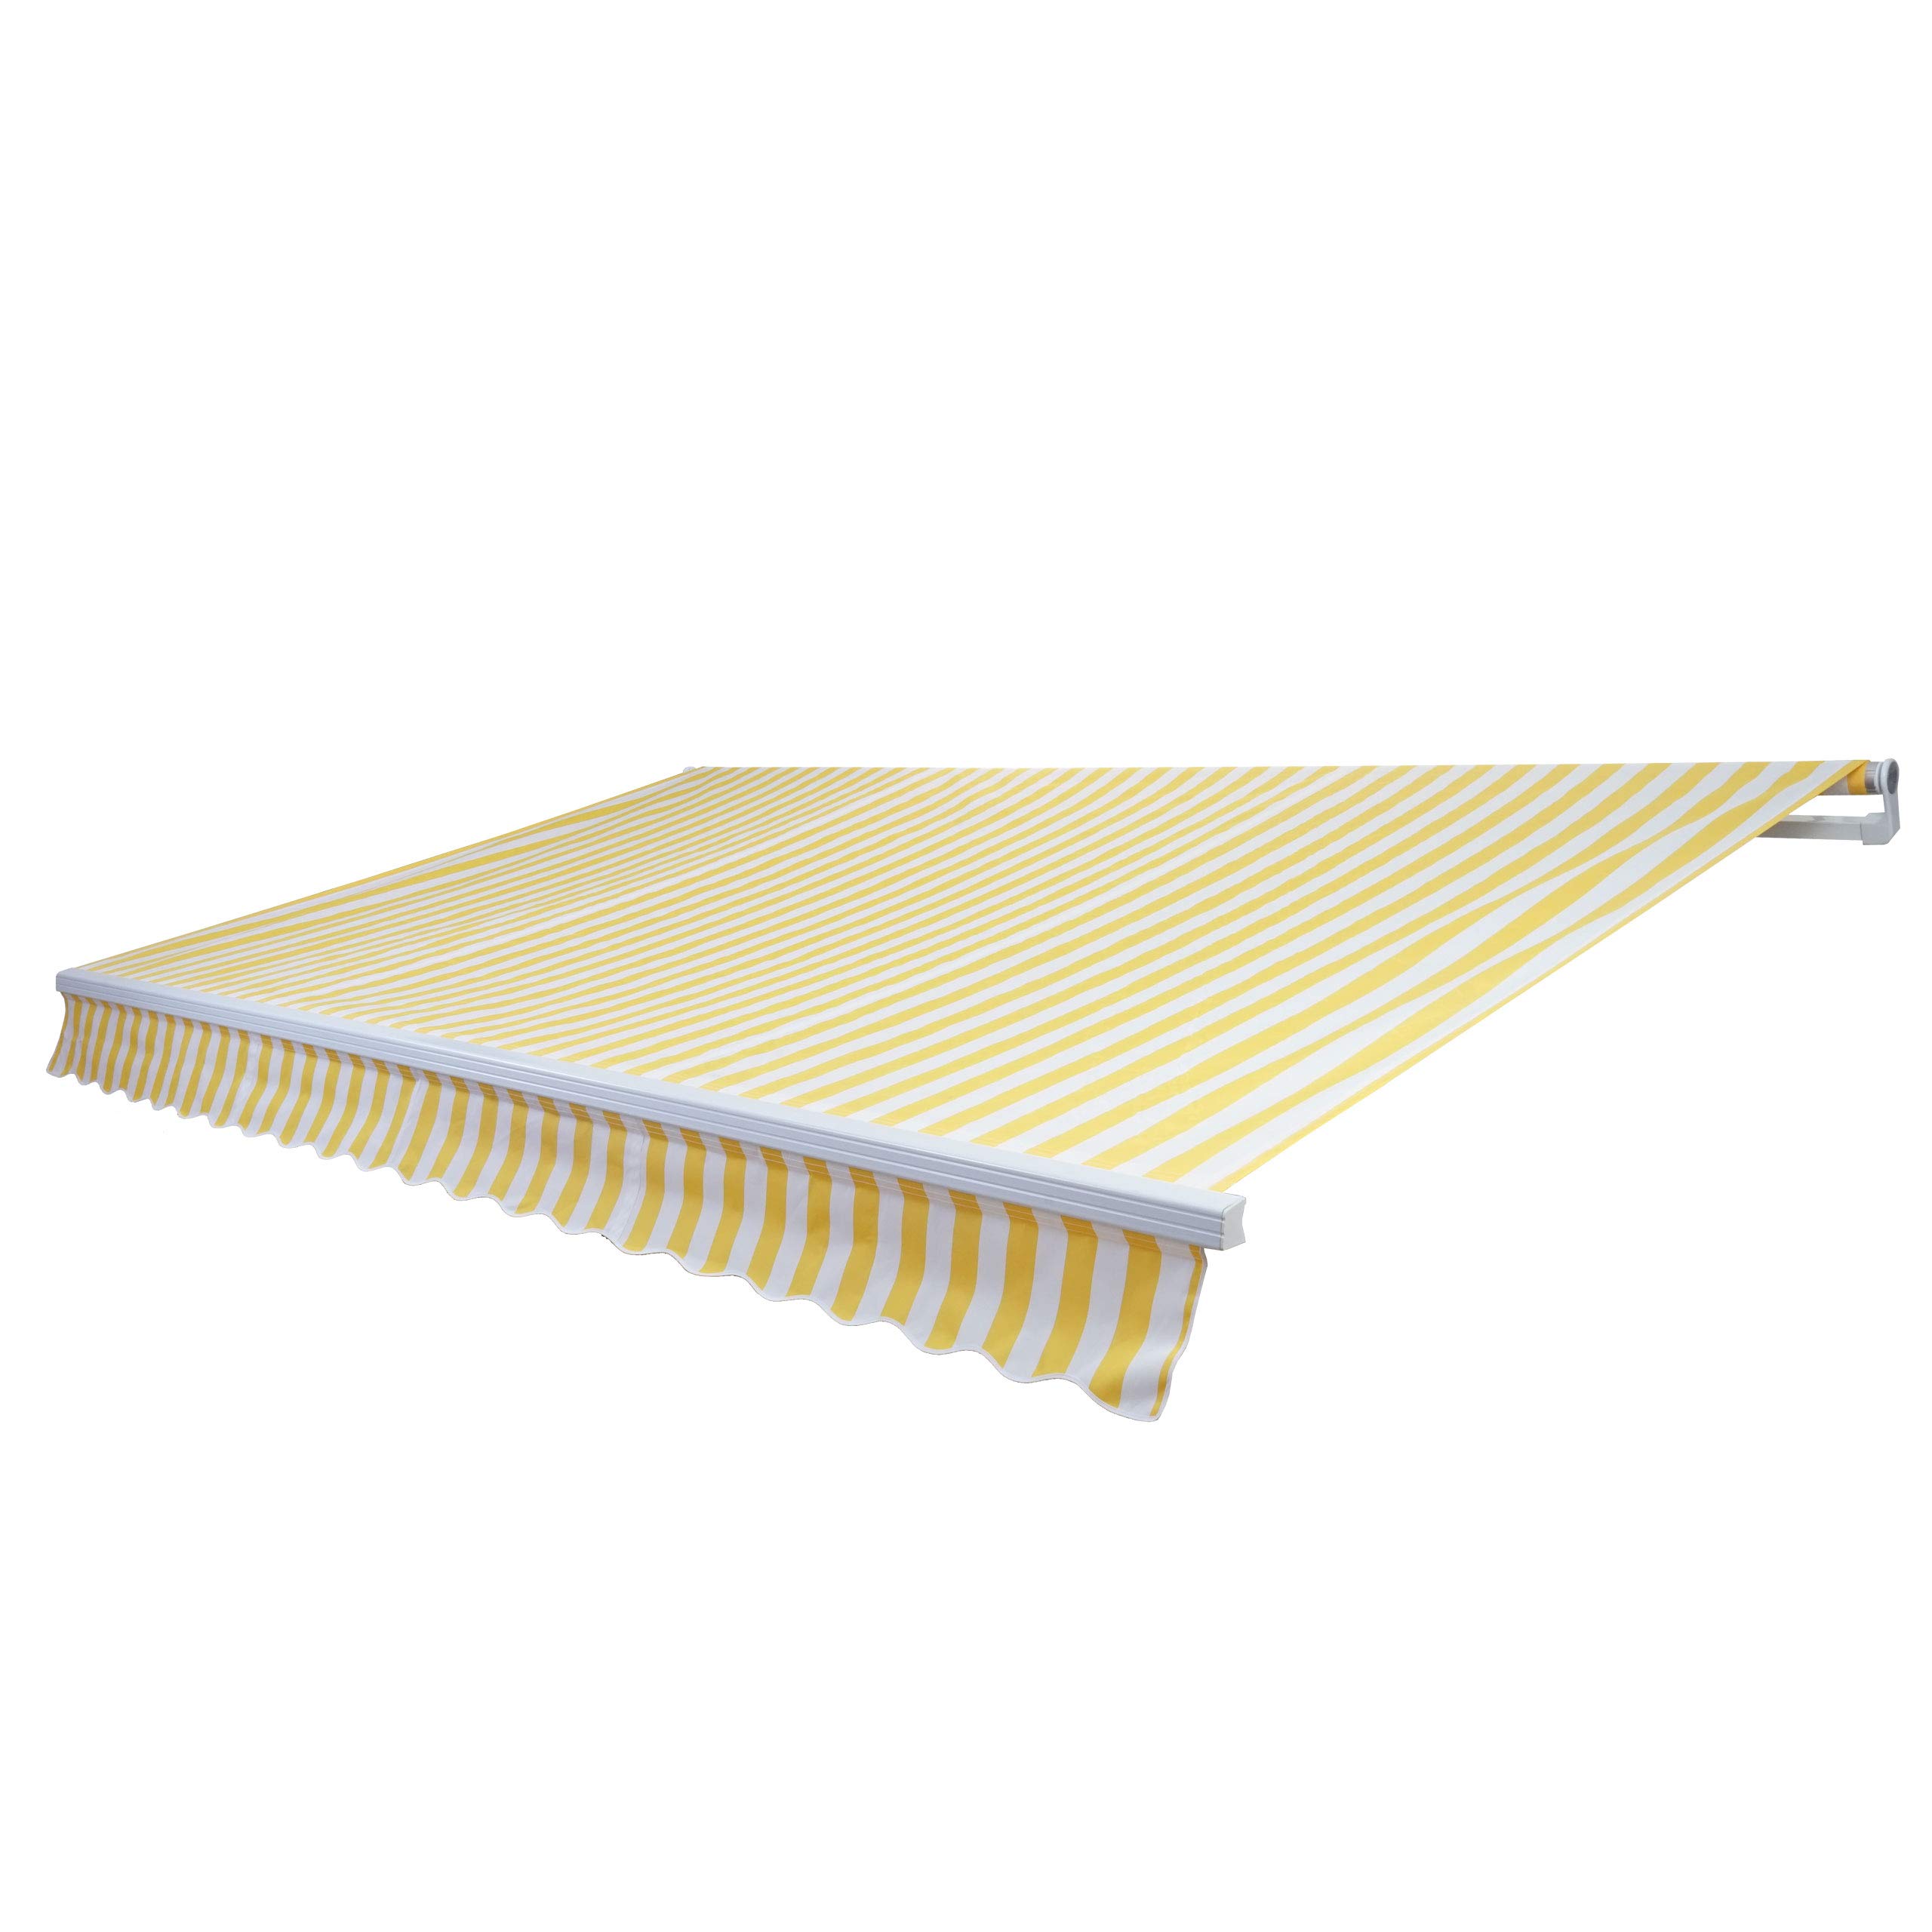 Alu-Markise HWC-E49, Gelenkarmmarkise Sonnenschutz 2,5x2m - Polyester Gelb/Weiß